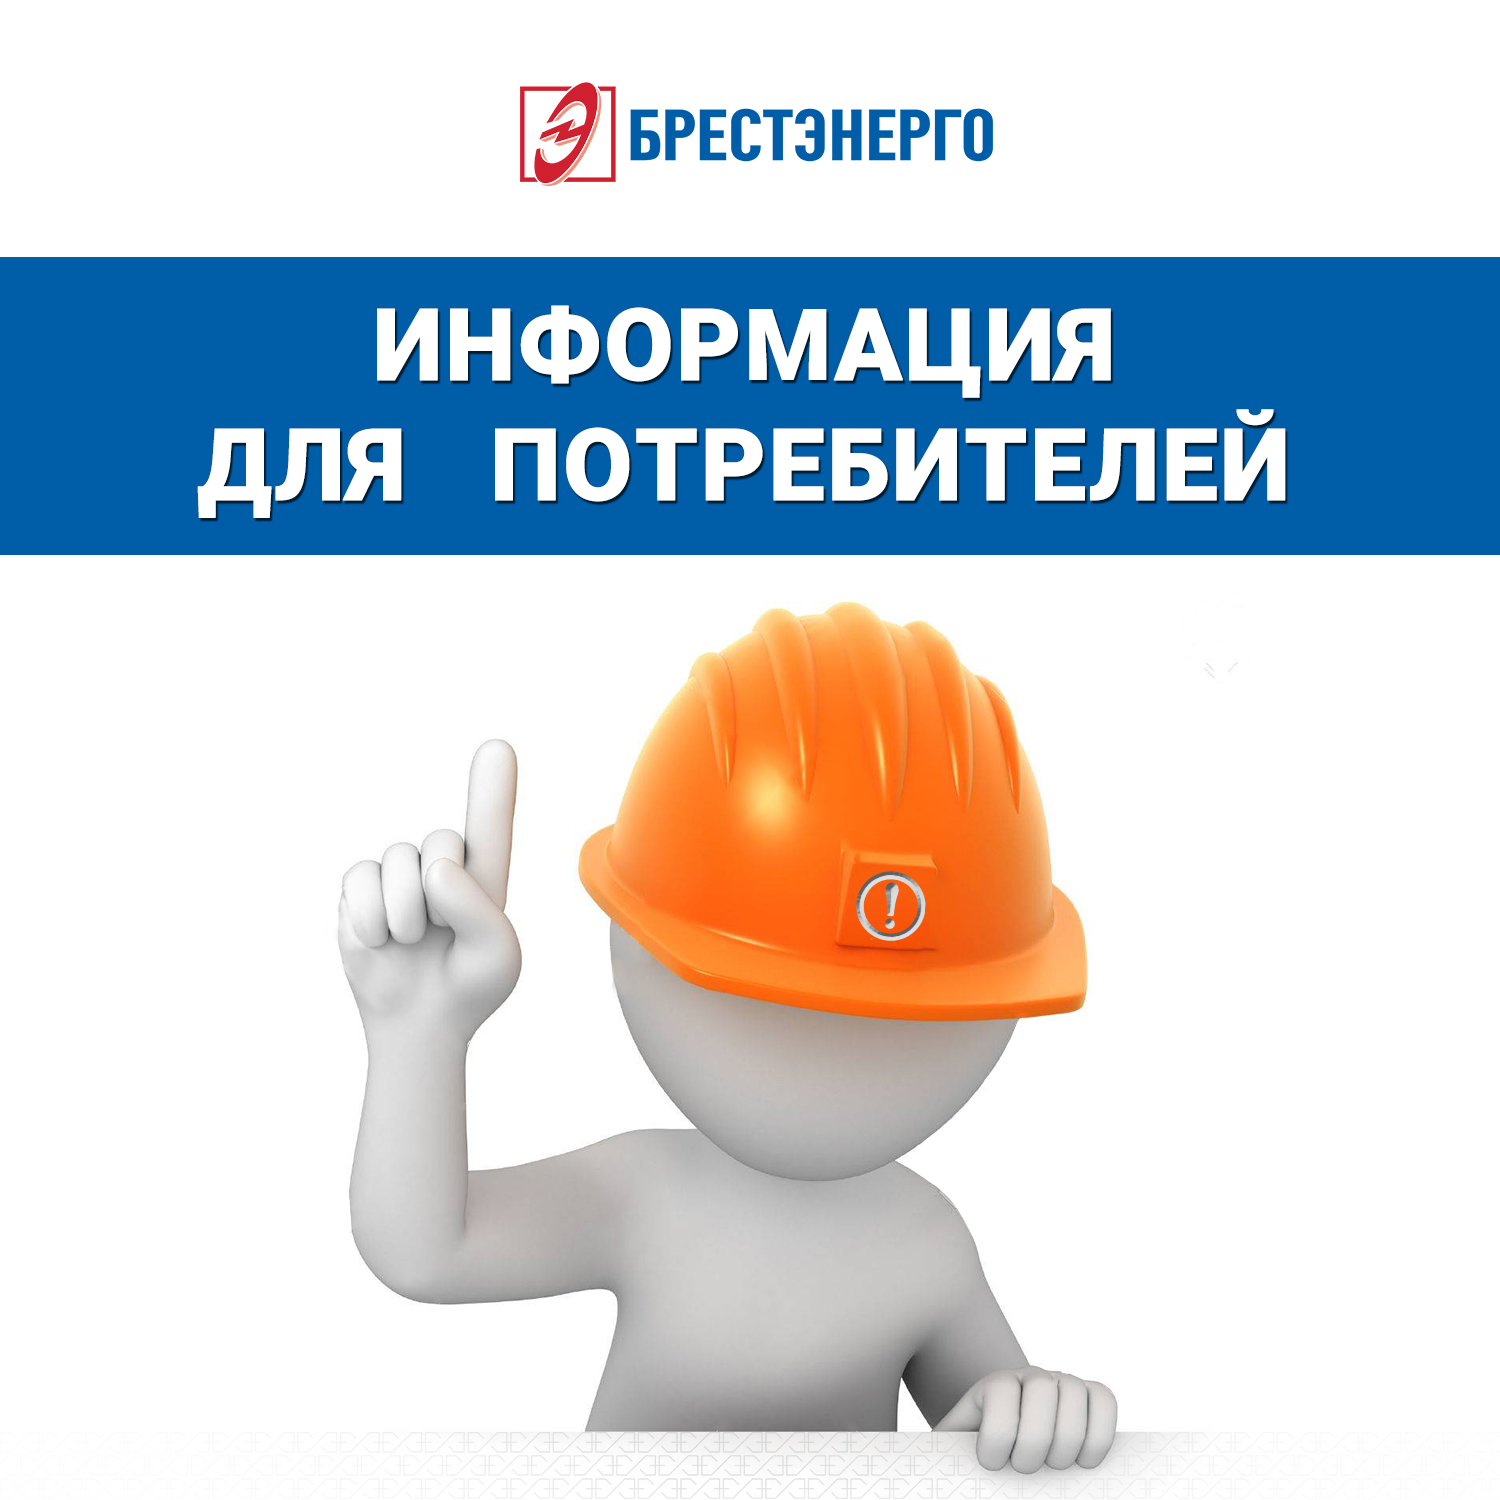 Проведение работ по опрессовке и ремонту тепловых сетей в городе Барановичи